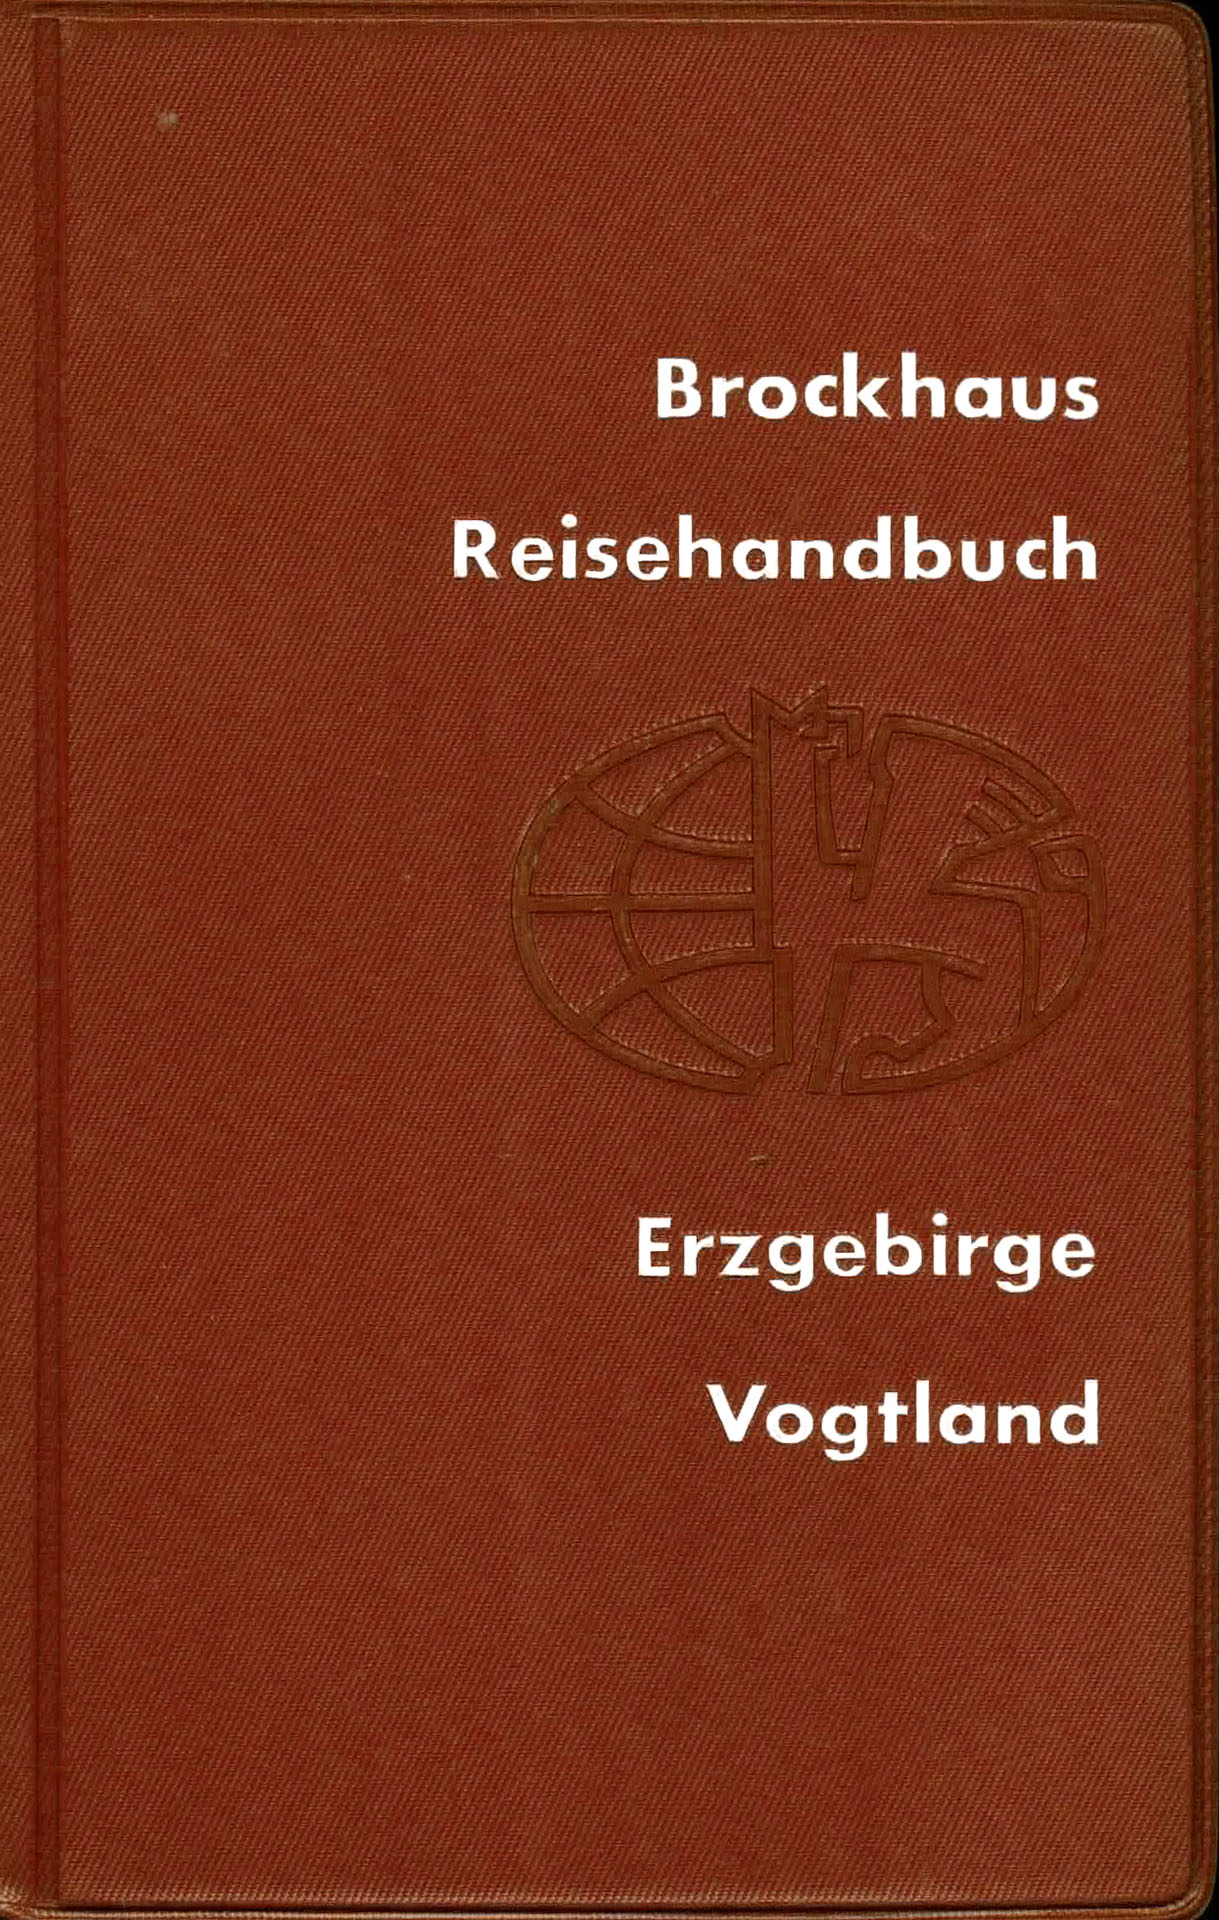 Erzgebirge, Vogtland (Brockhaus Reisehandbuch)